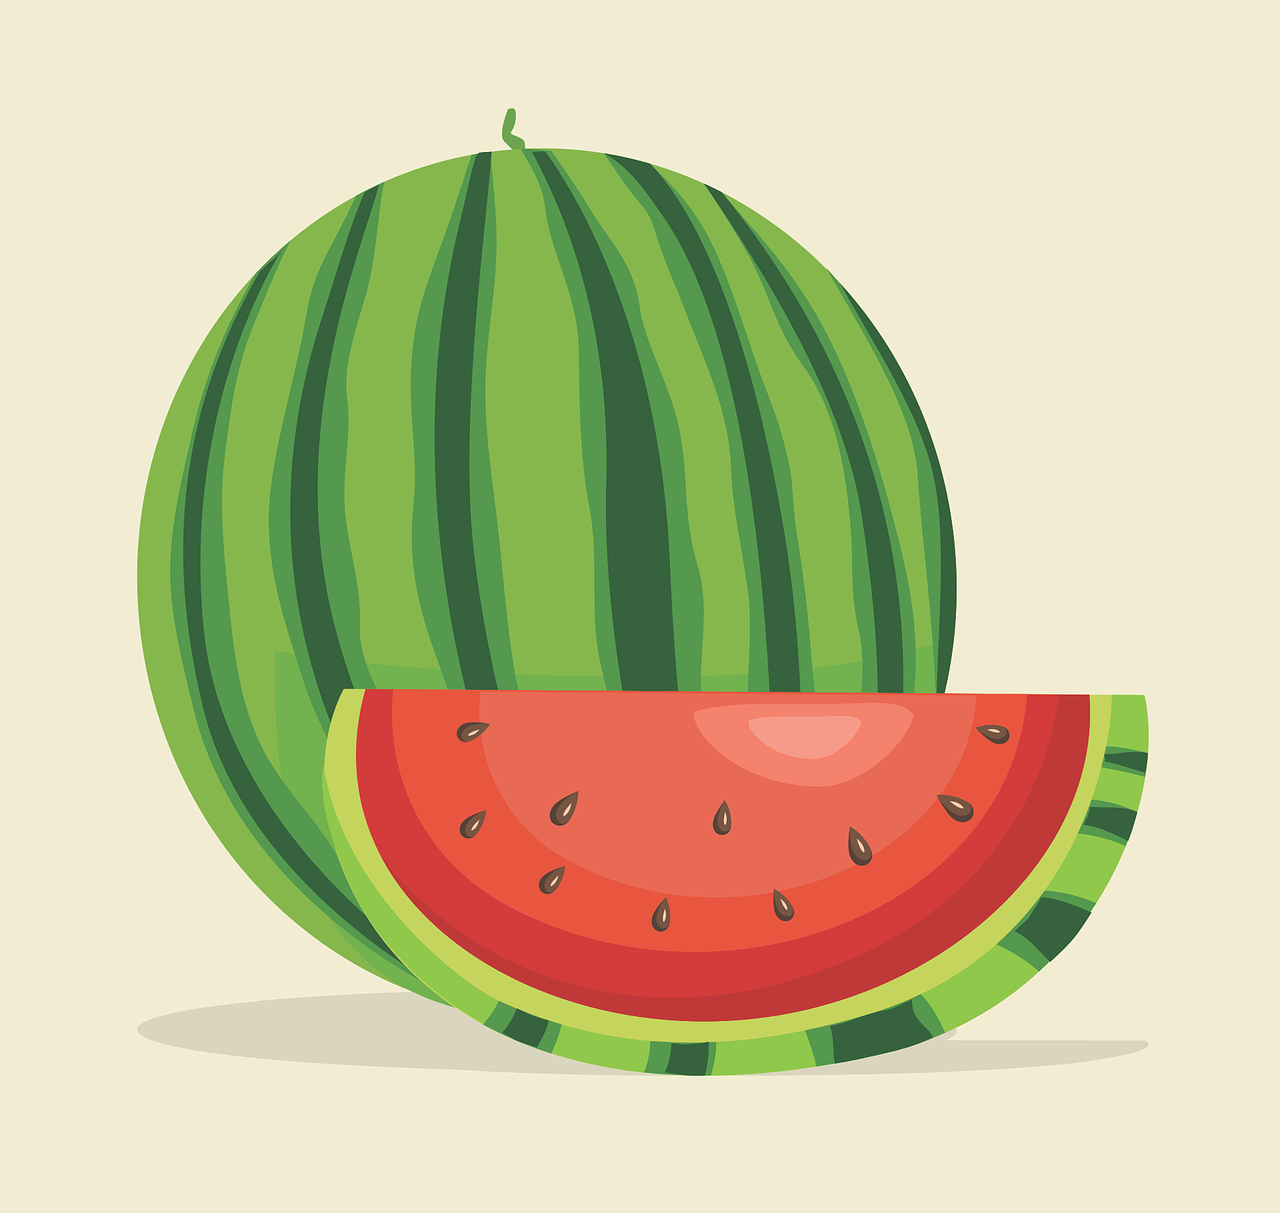 Watermelon-berry Wonder